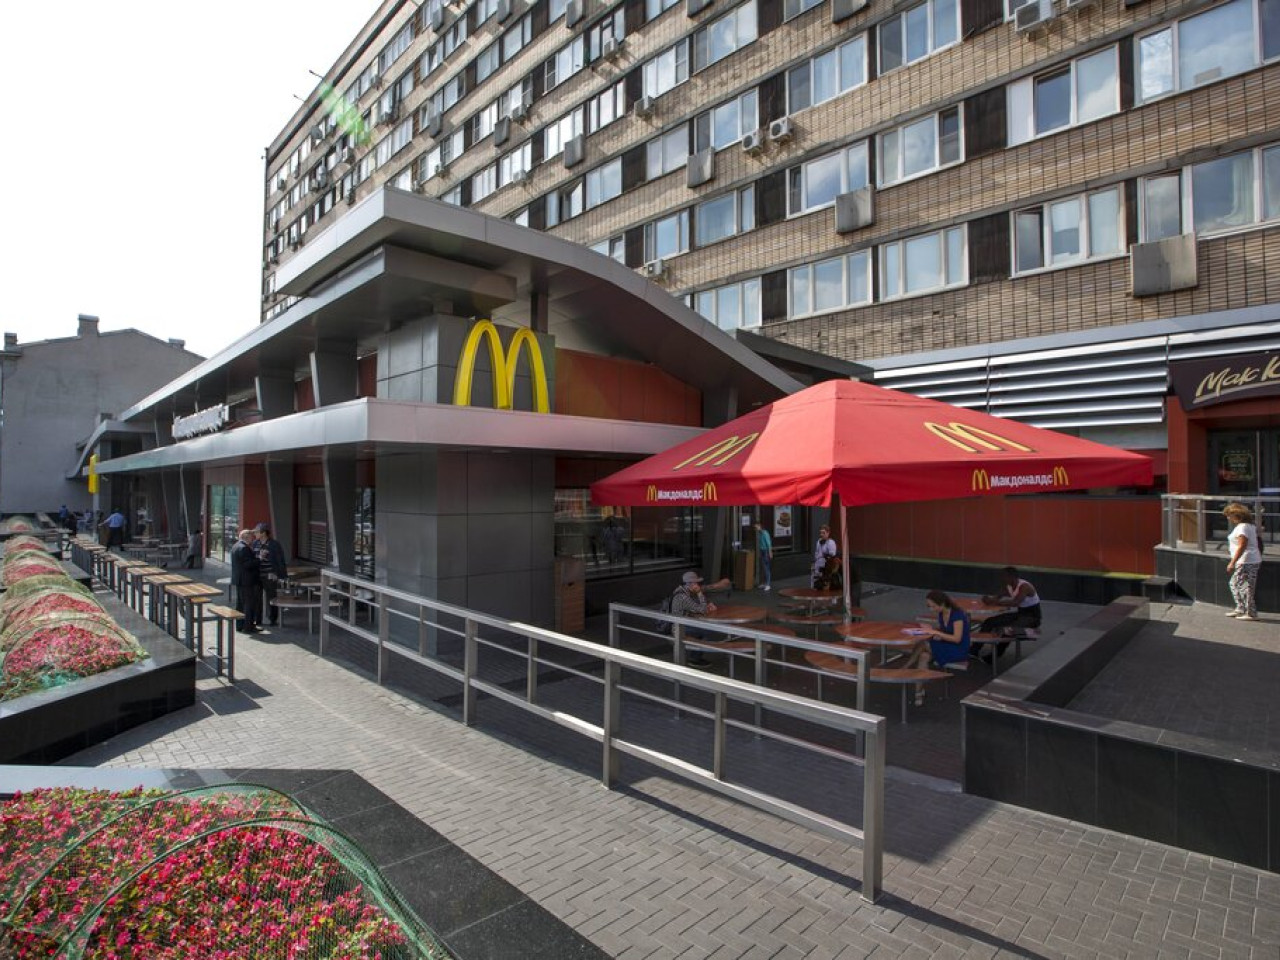 Ρωσία: Ανοίγουν τα McDonald’s με το όνομα Vkusno & tochka